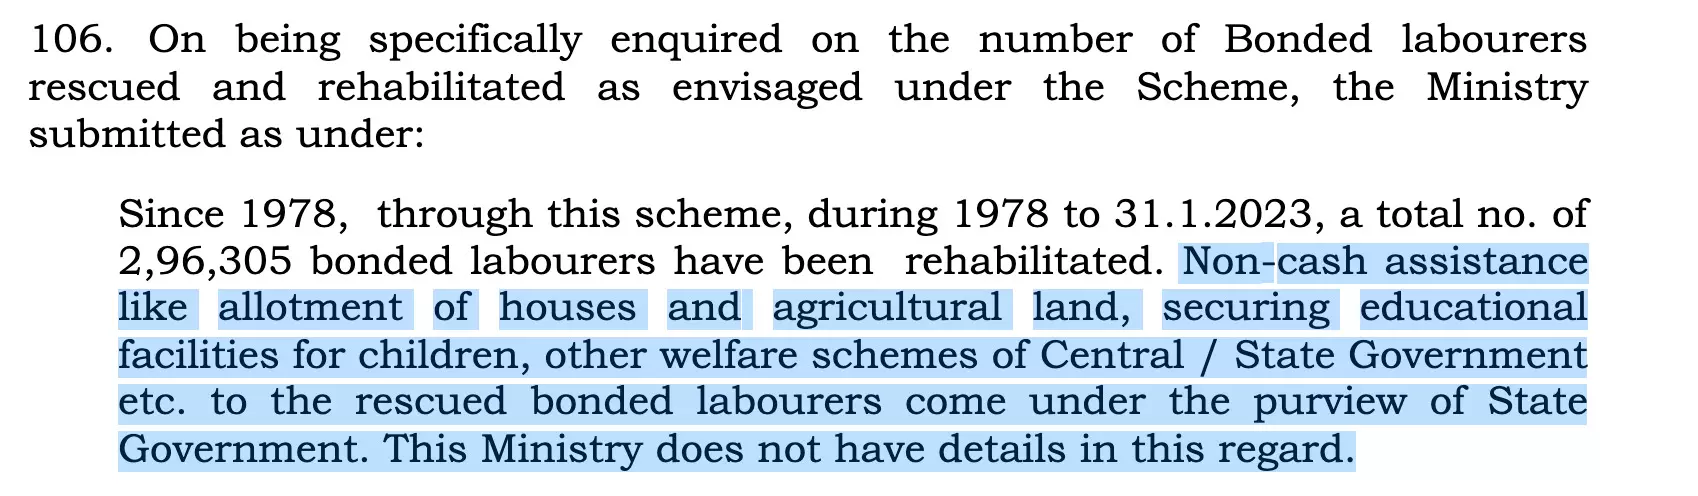 2016 केंद्रीय योजना के आधार पर बंधुआ मजदूर पुनर्वास के लिए किए गए कुछ उपाय सोर्स: लोक सभा (3 अप्रैल, 2023)